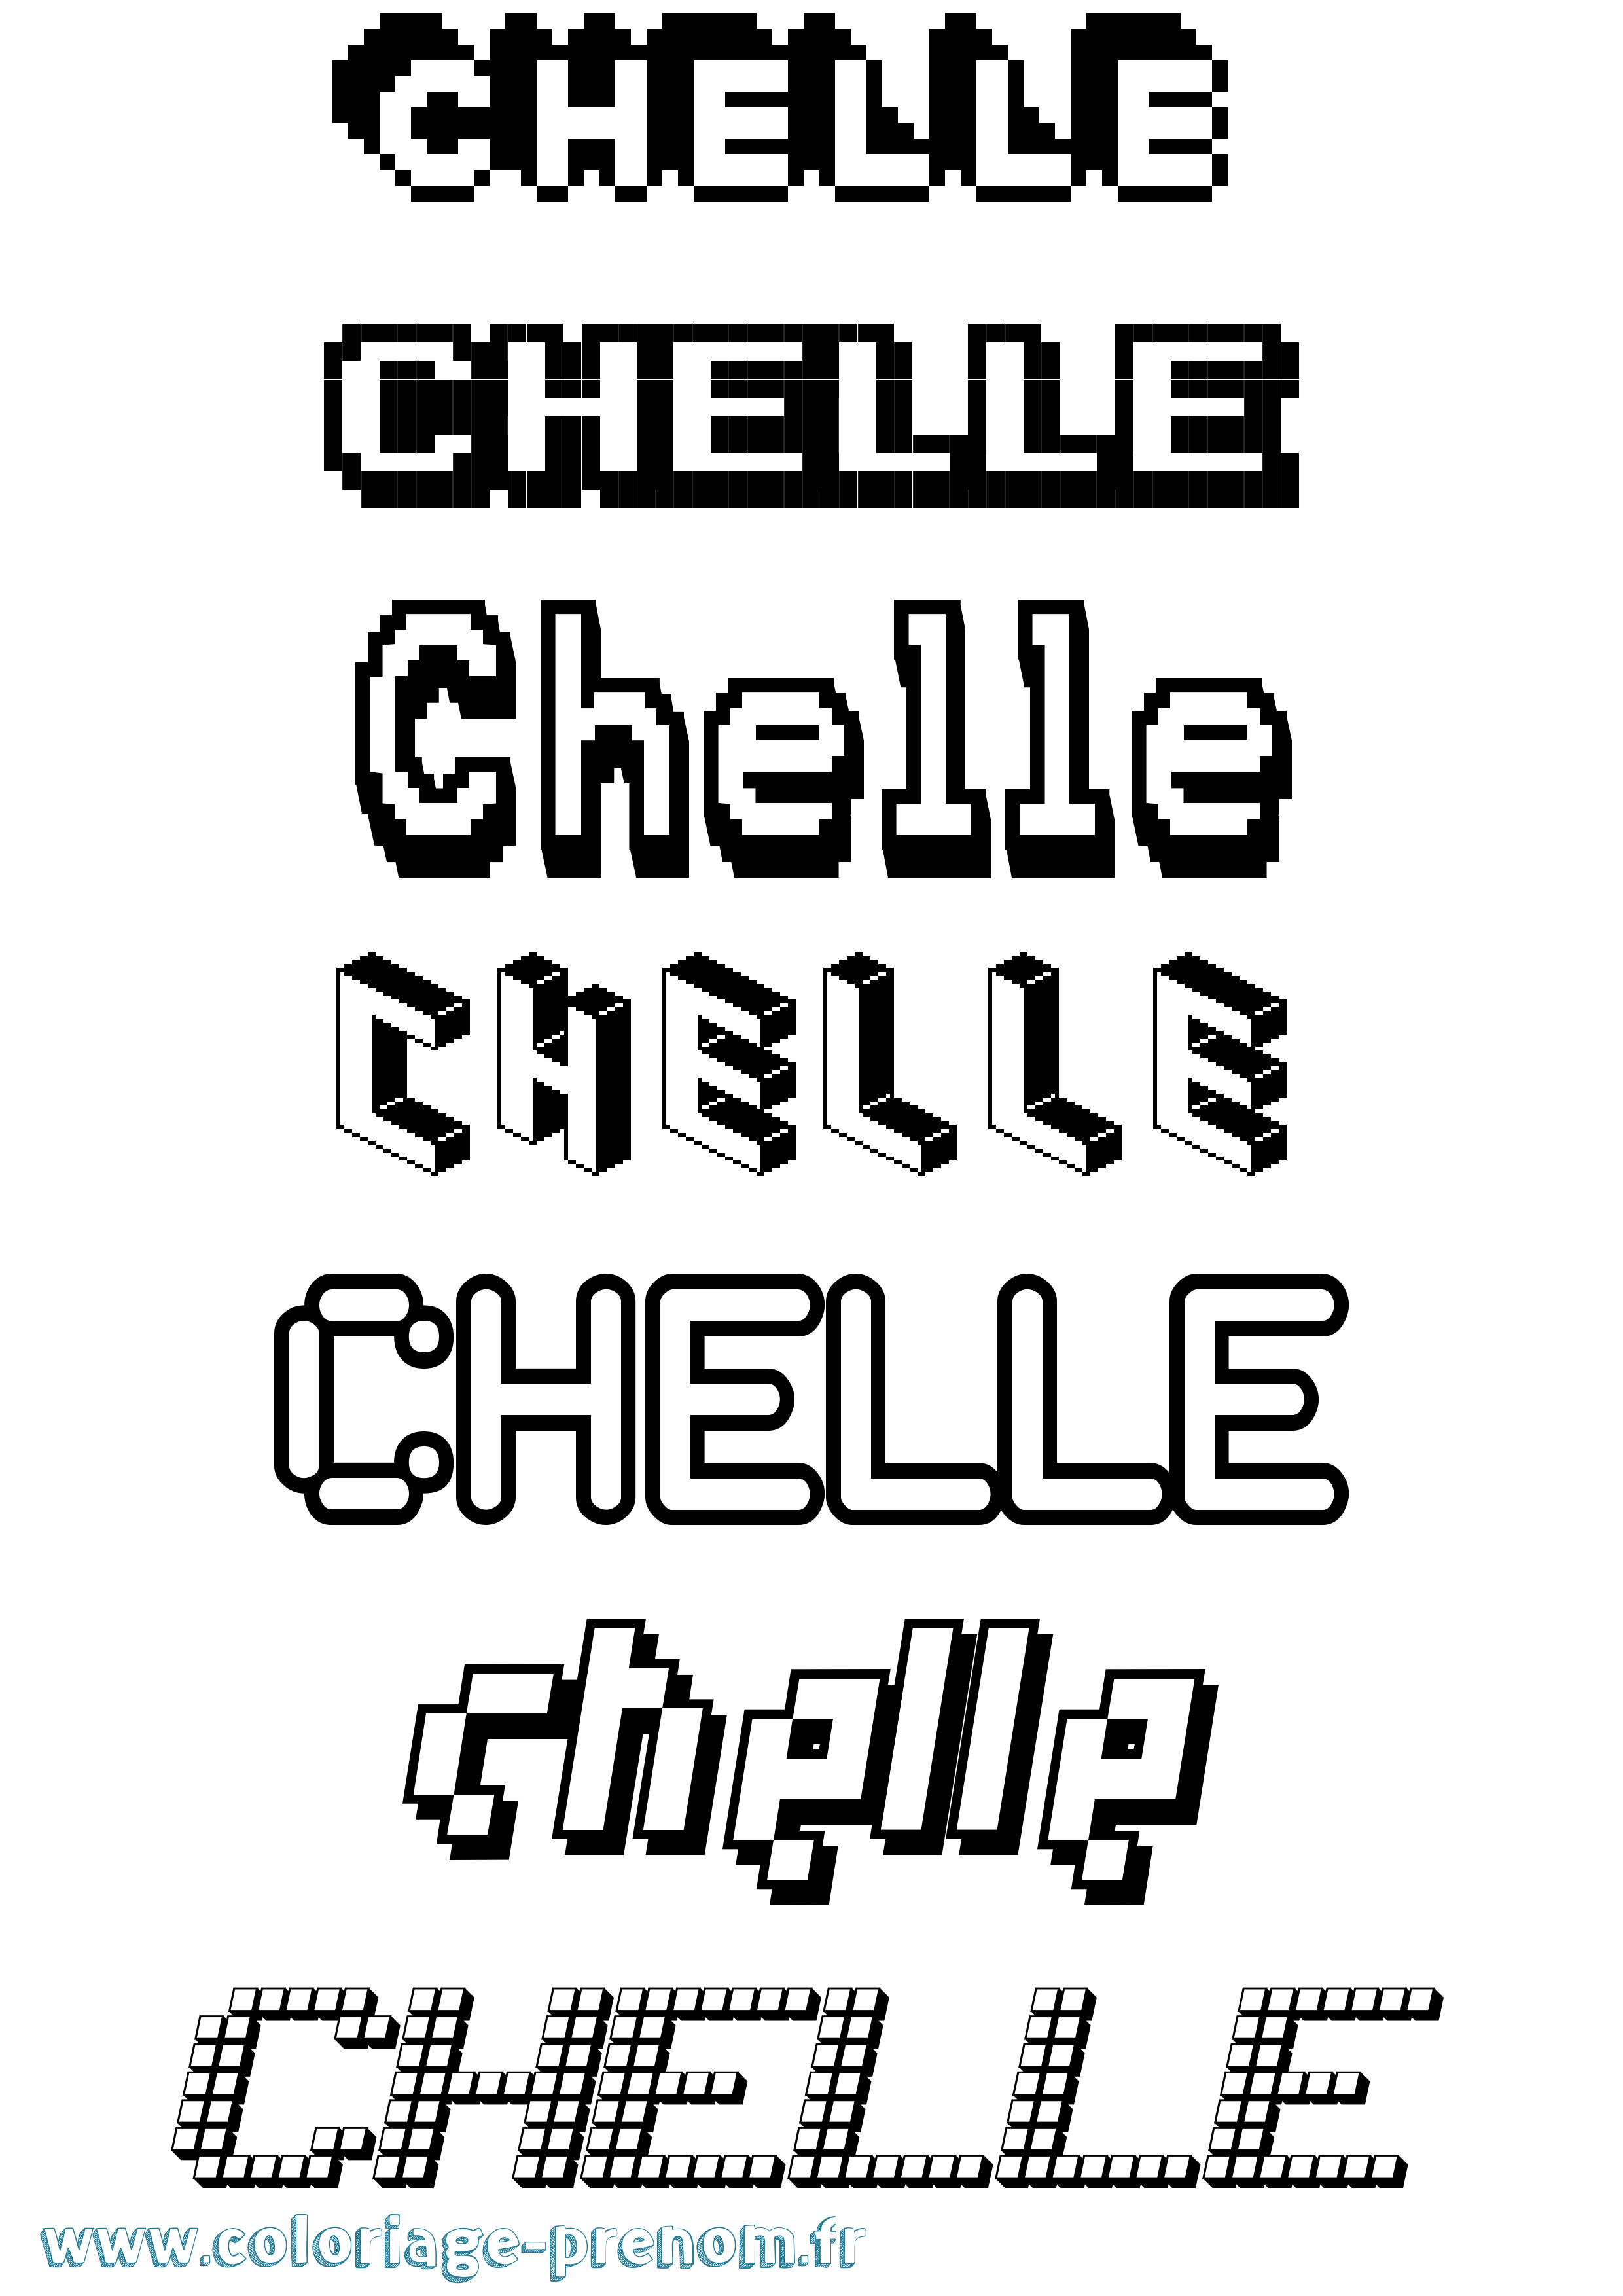 Coloriage prénom Chelle Pixel